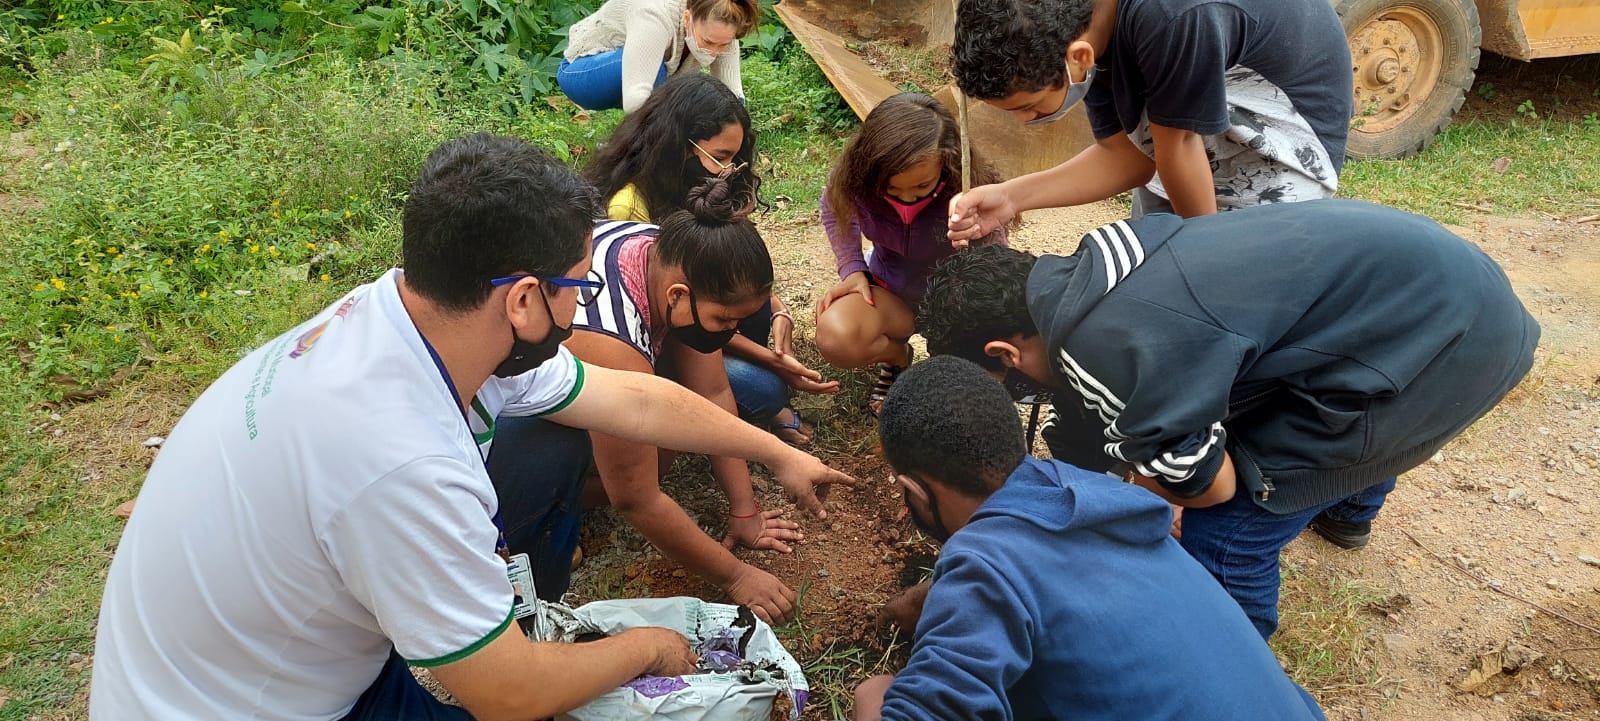 1ª Semana da Árvore de Guarapari termina com saldo positivo em plantio e doação de mudas 